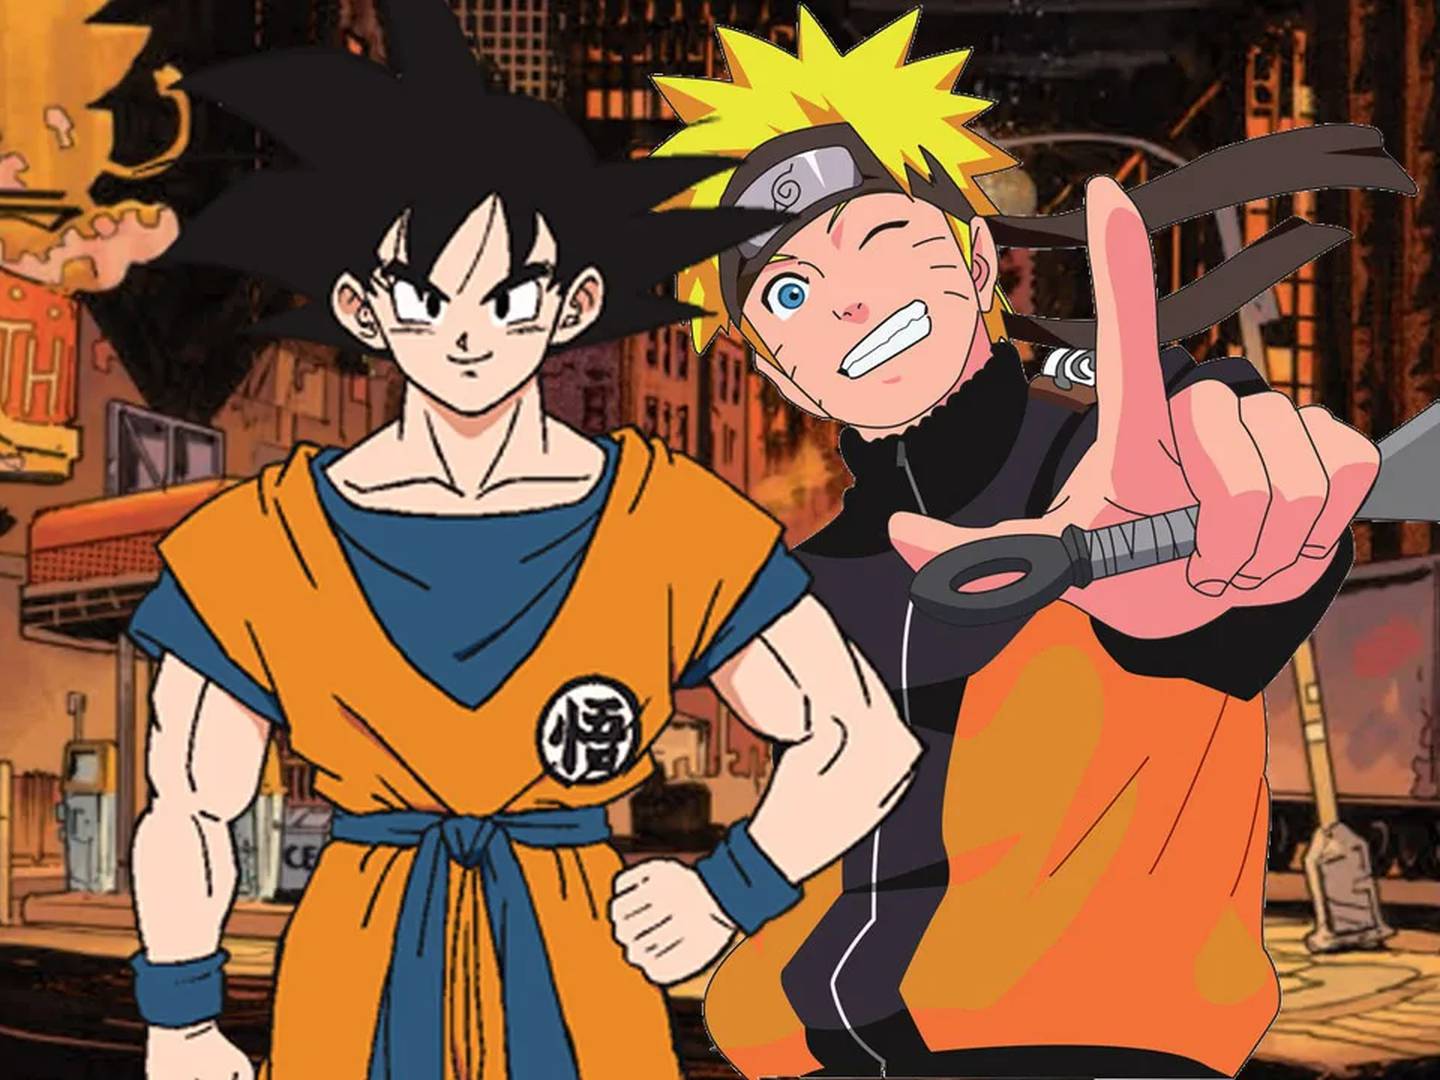 Naruto - Edição especial mostra como ele se tornou Hokage! - AnimeNew